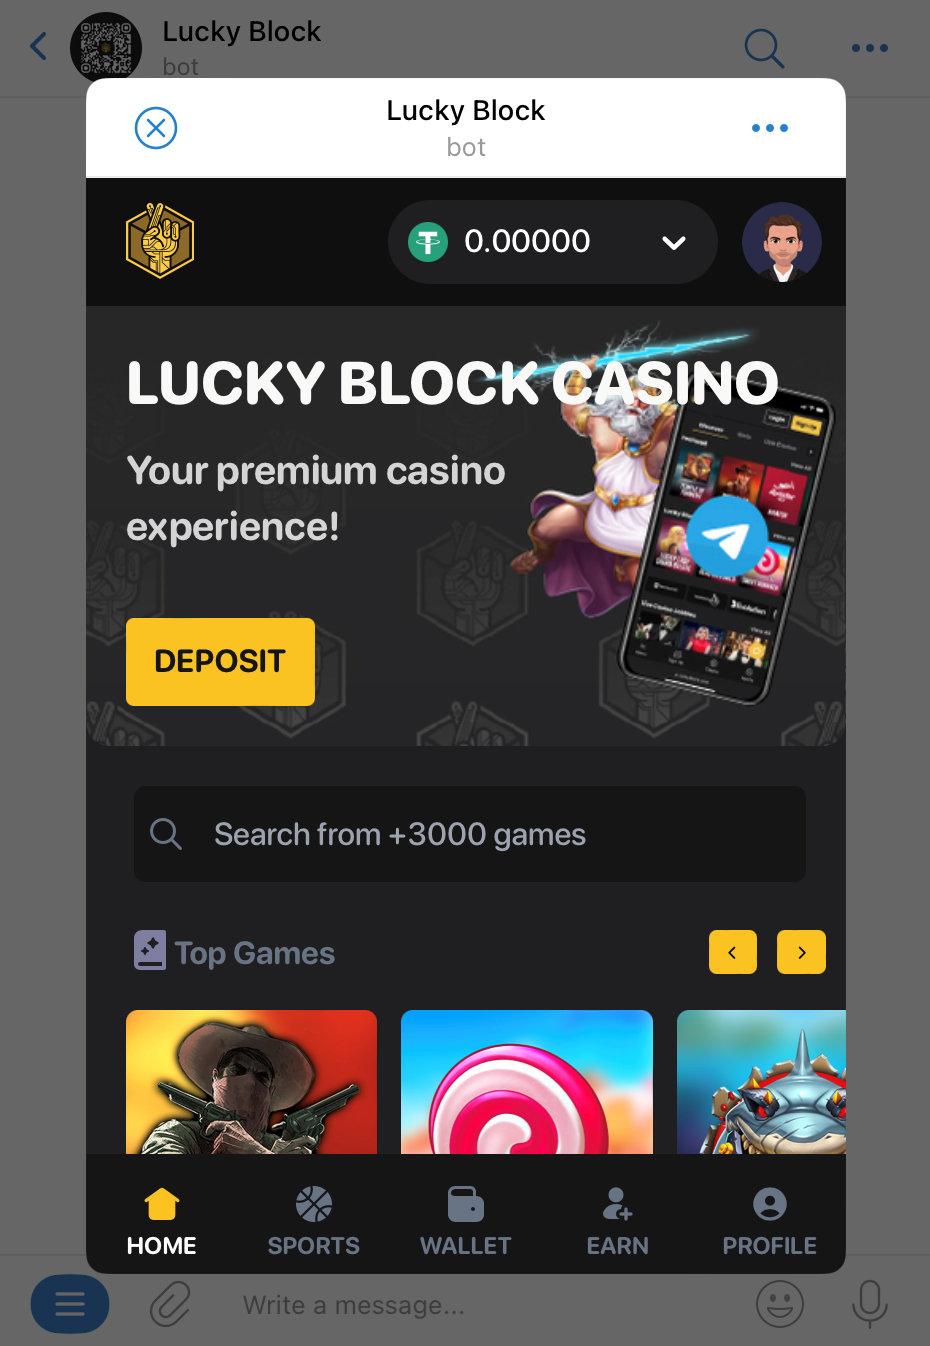 Lucky Block Telegram casino | DeviceDaily.com